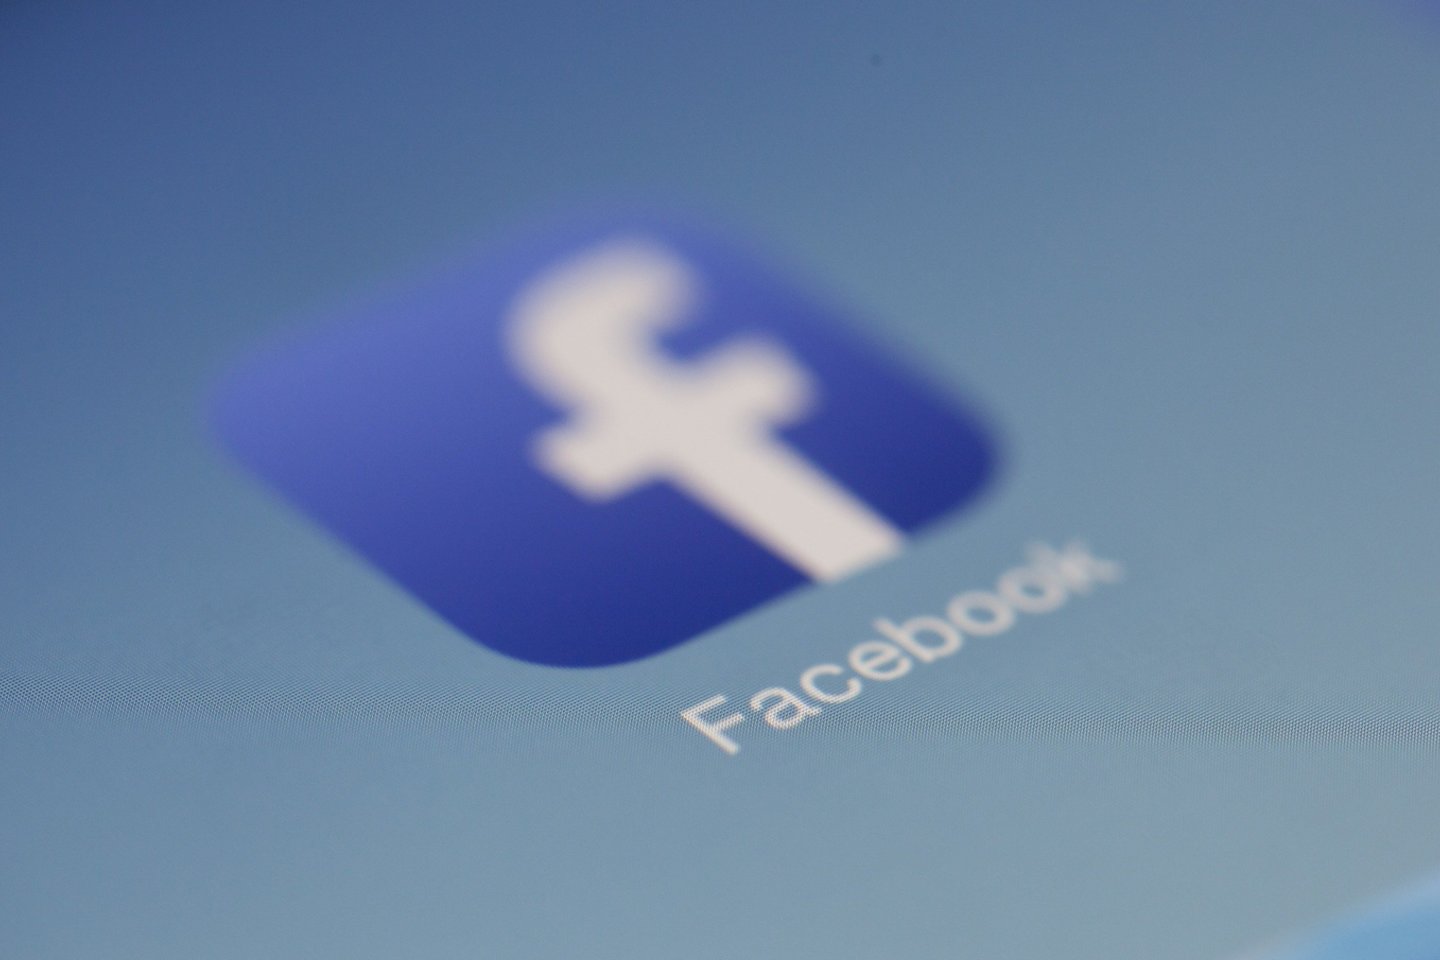  Ketvirtadienį, vasario 4 d., didžiausiam socialiniam tinklui pasaulyje „Facebook“ sukanka 17 metų.